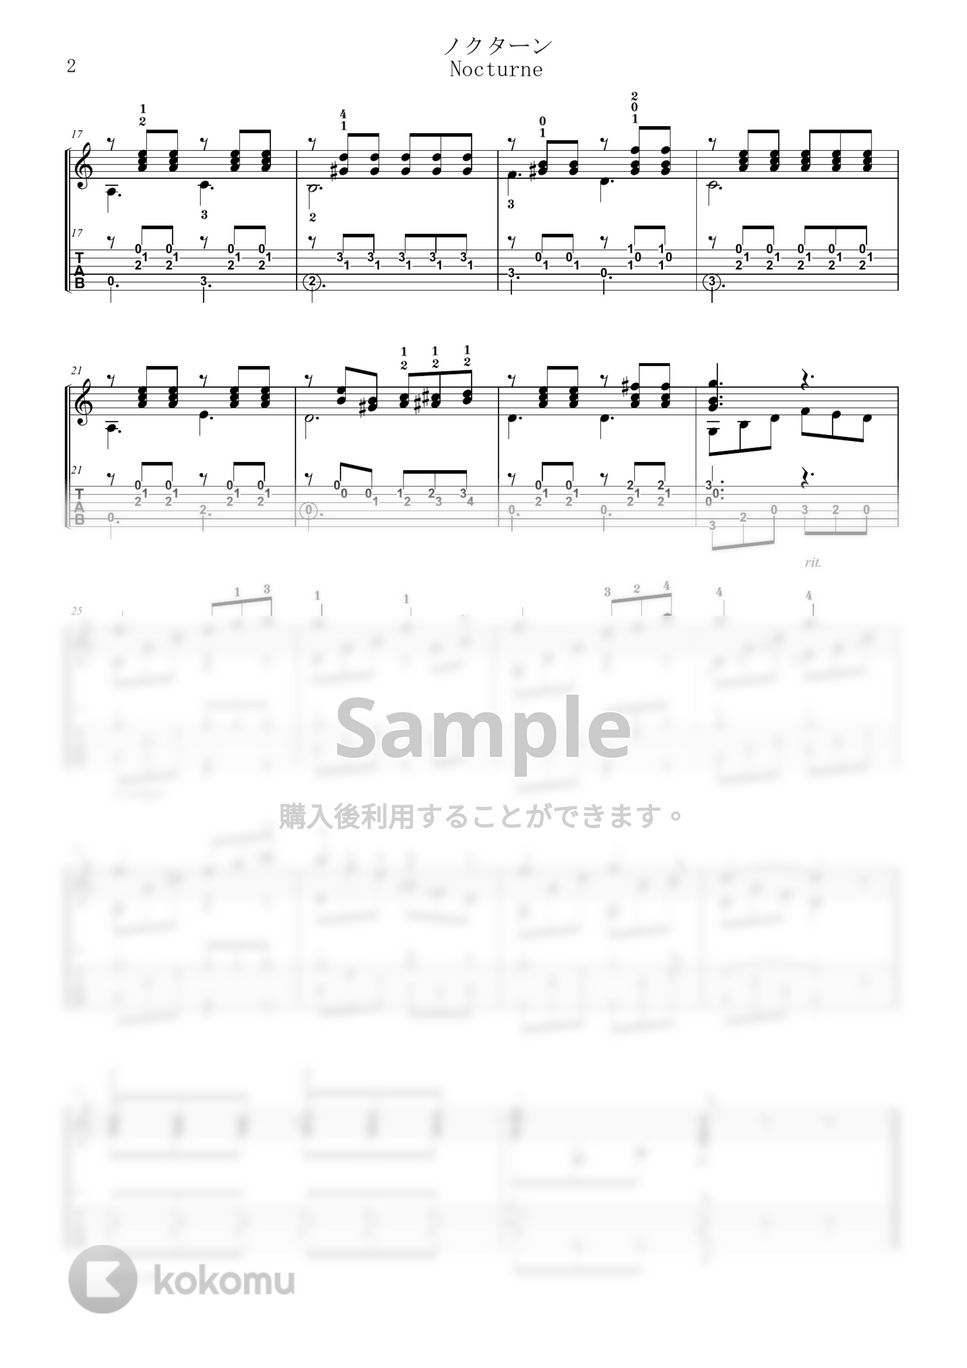 C.ヘンツェ - ノクターン (TAB譜) by 川口コウスケ